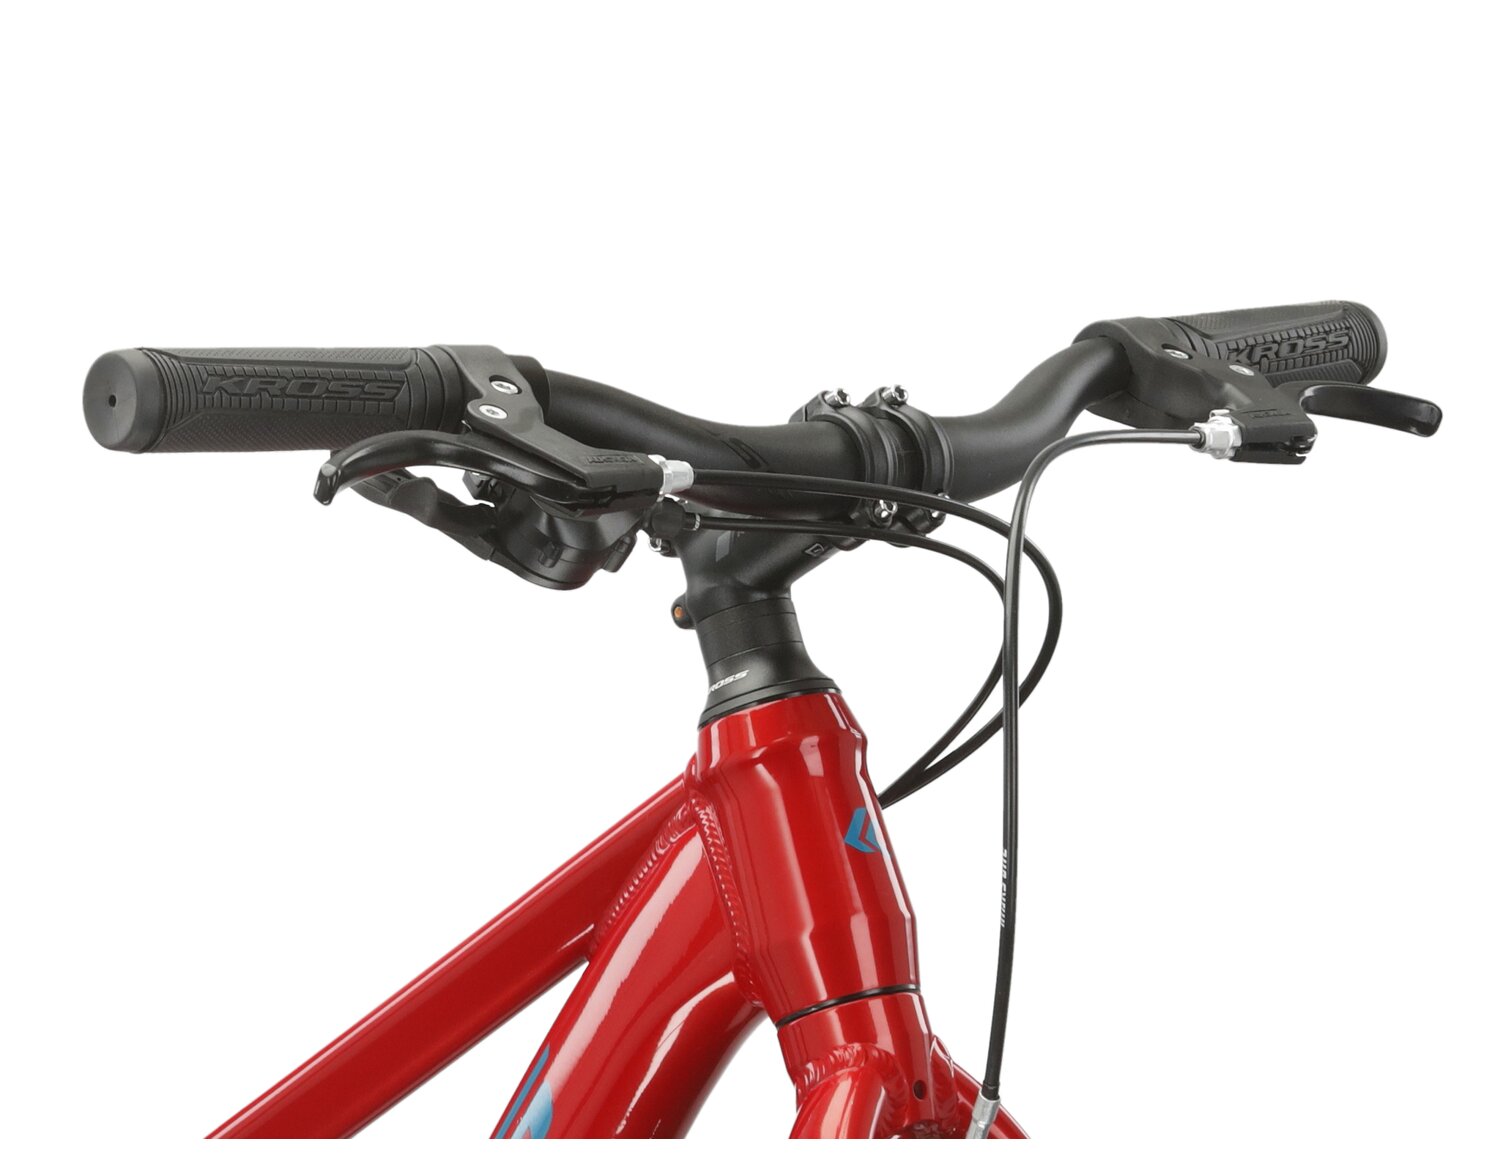  Kierownica oraz przednia część ramy juniorskiego roweru MTB KROSS Level JR 1.0 pokryta czerwoną farbą proszkową. 